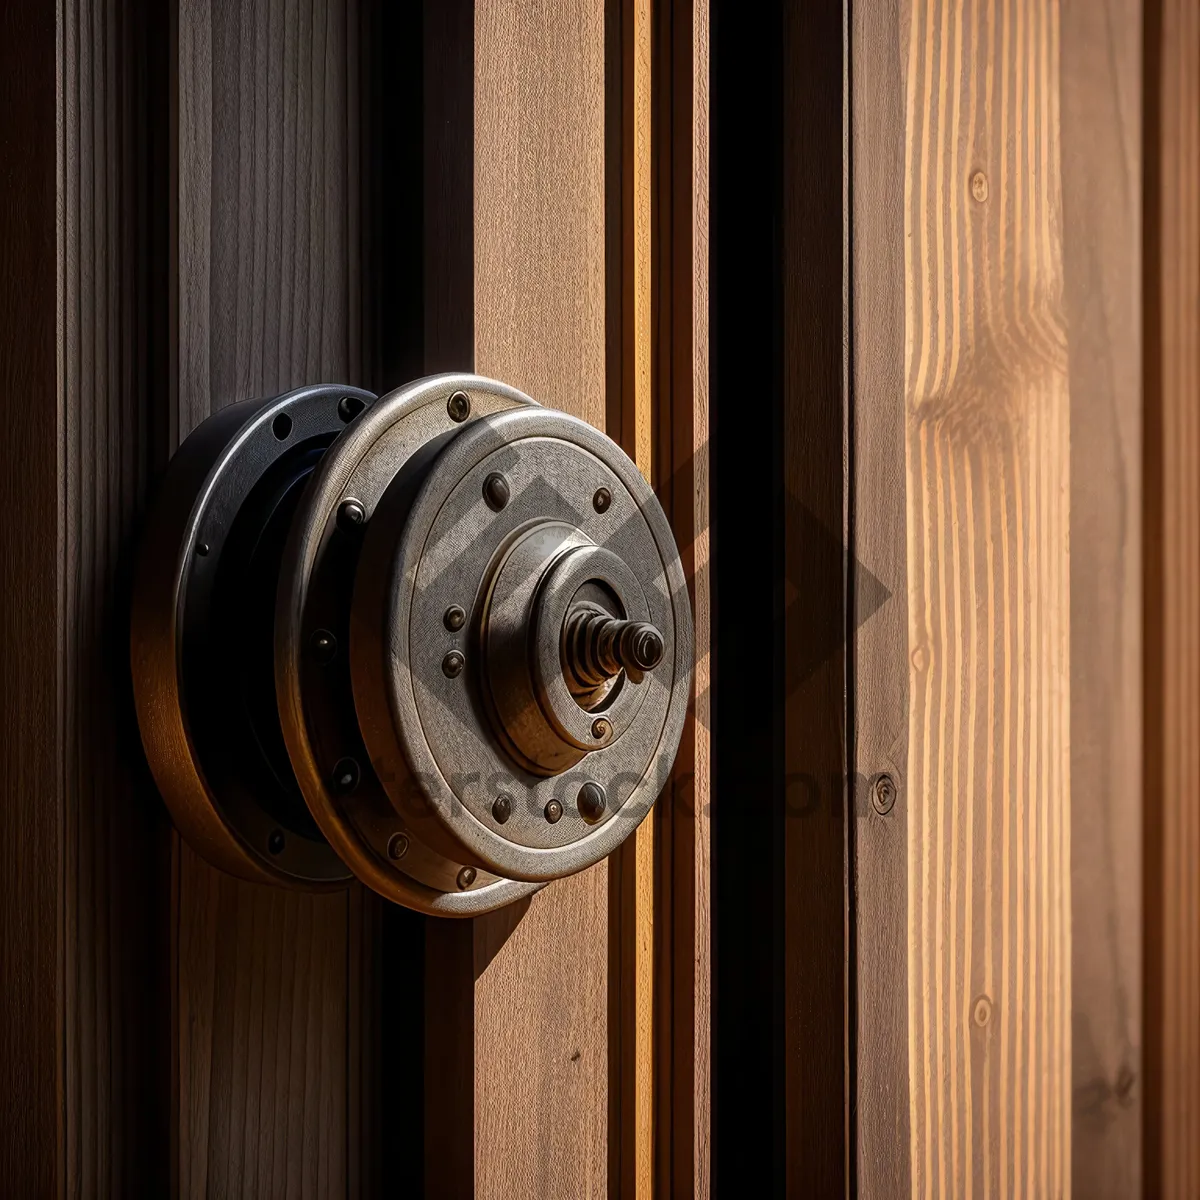 Picture of Vintage Metal Combination Lock on Wooden Door